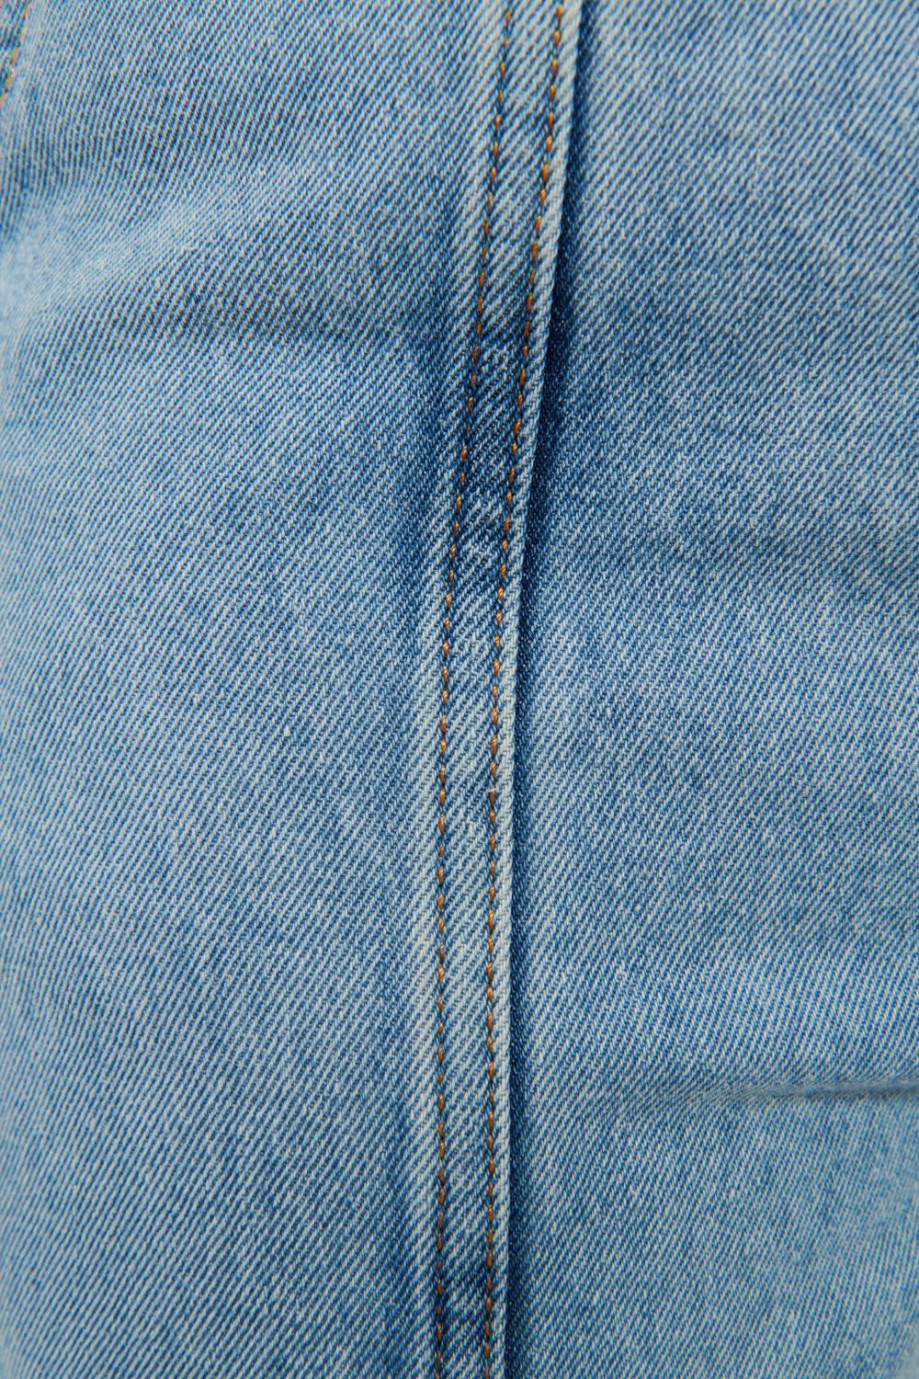 Short en jean azul claro tiro alto con elástico en la pretina